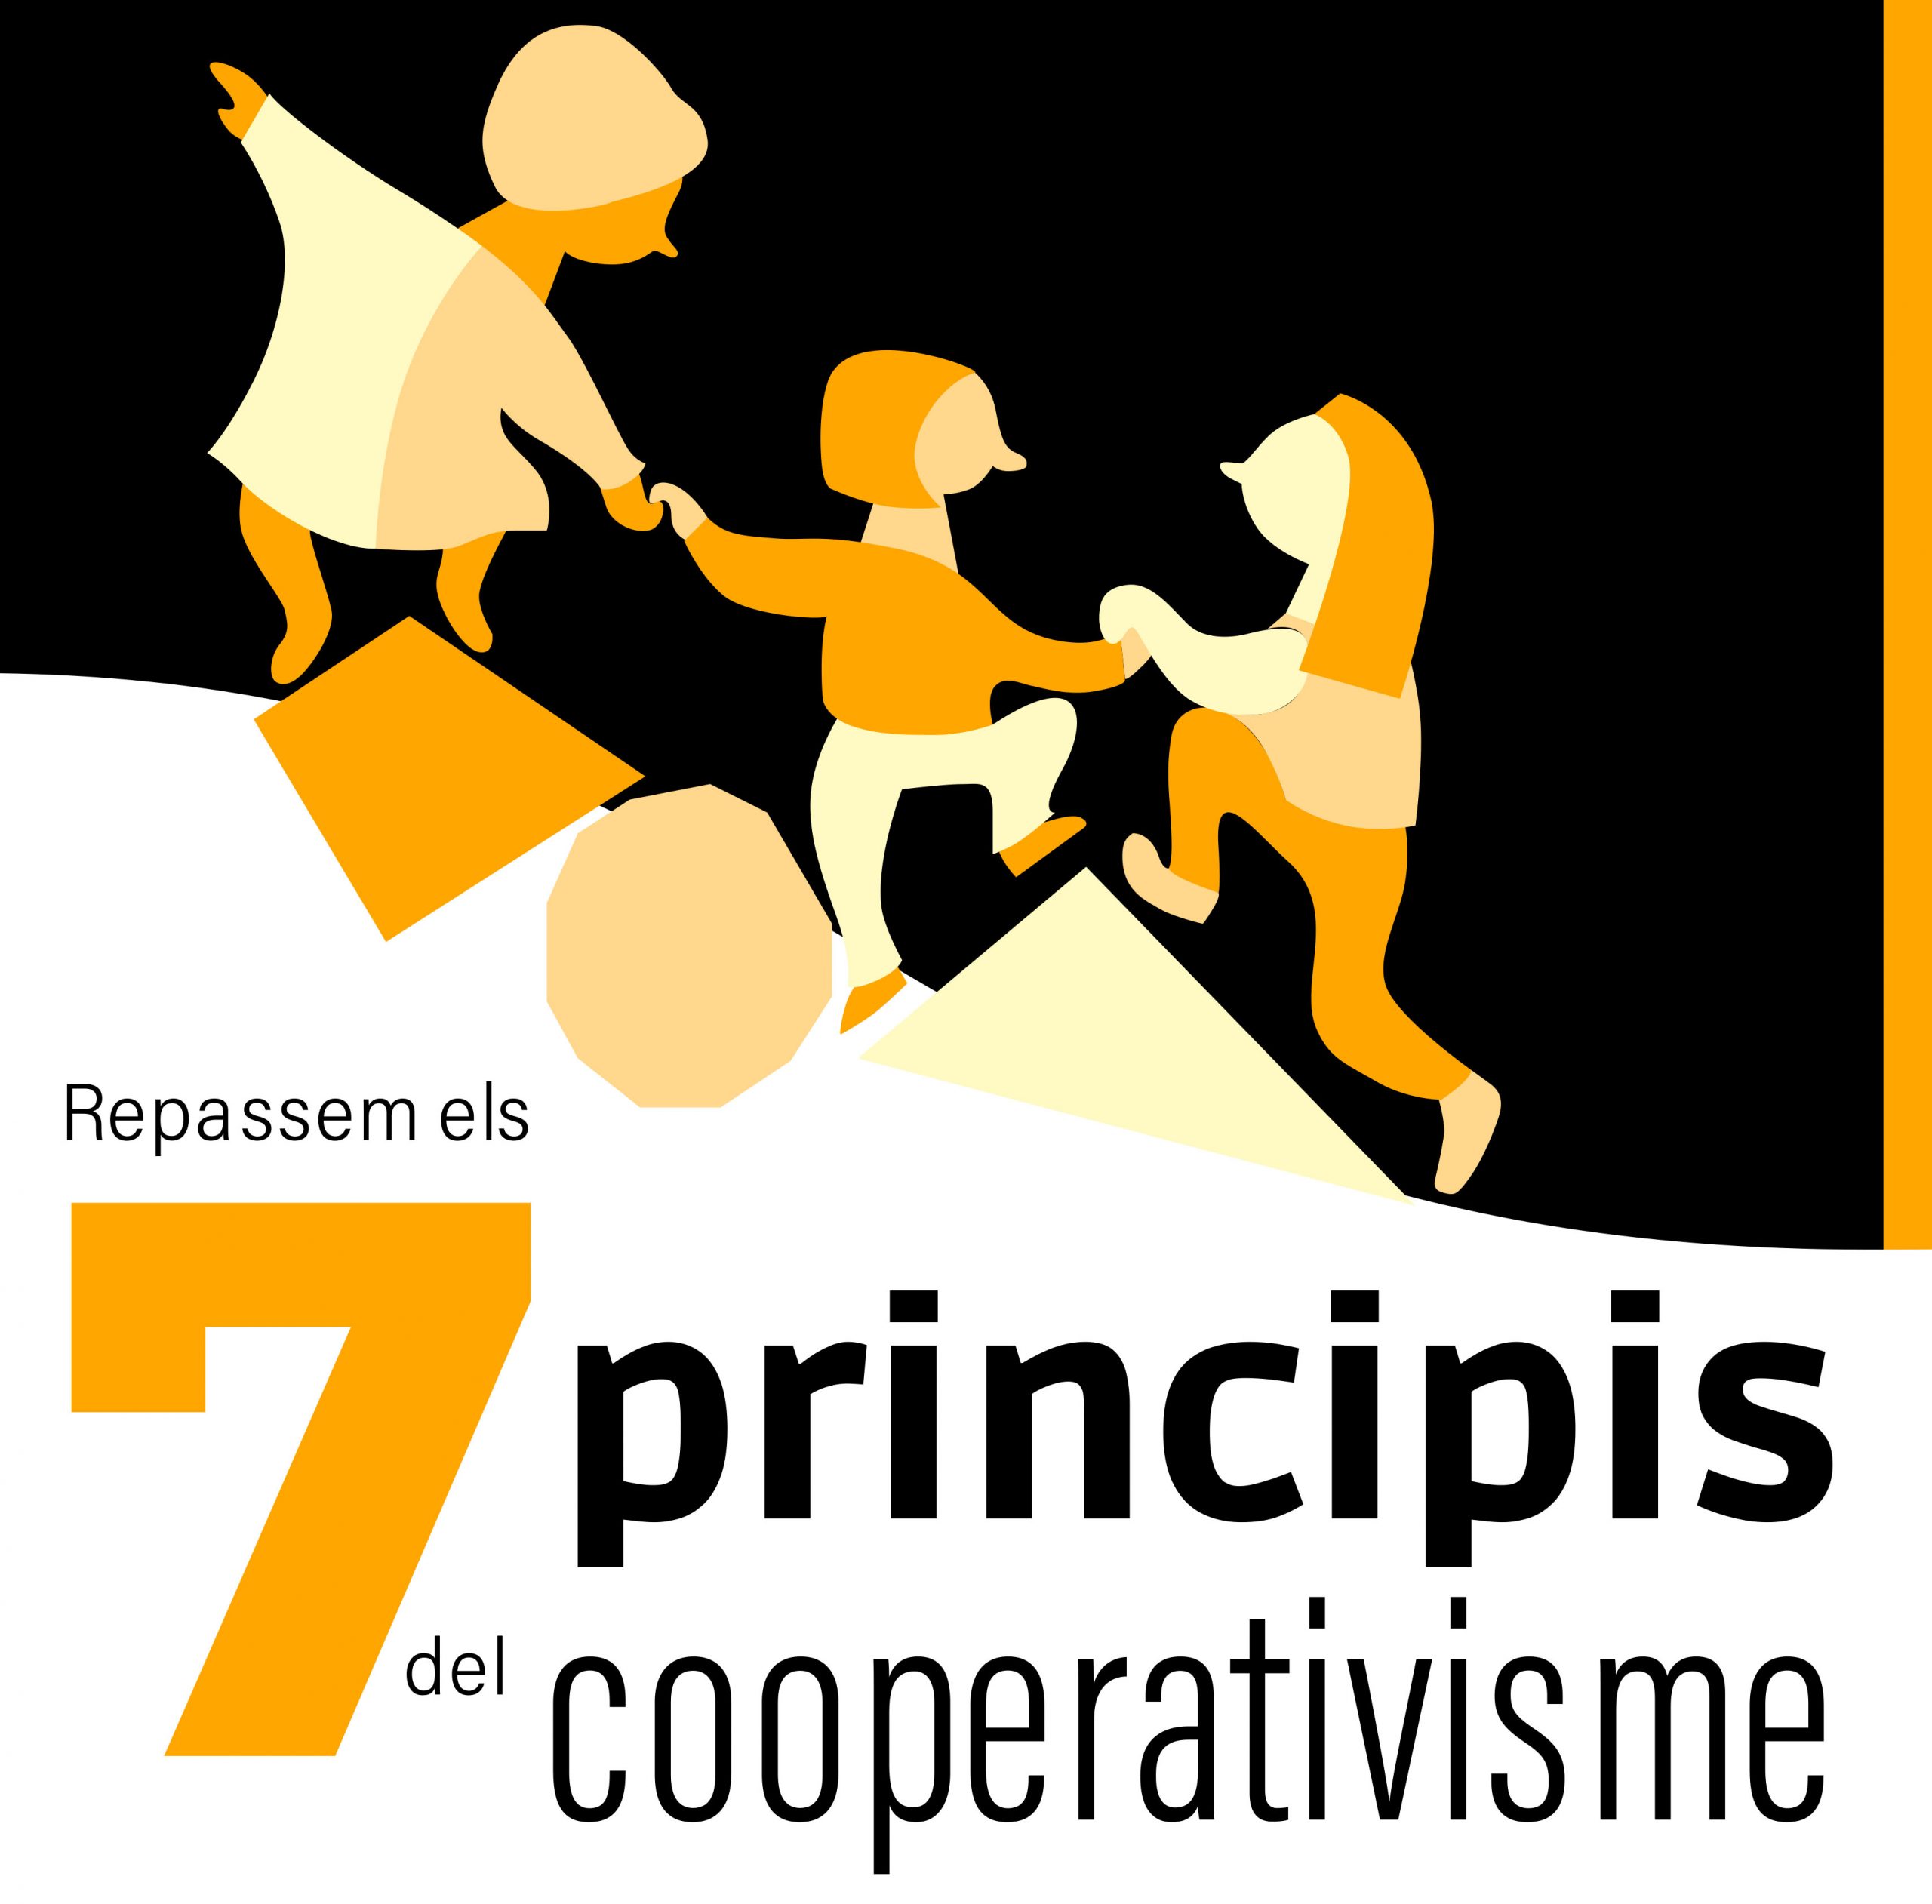 Repassem els 7 principis del cooperativisme